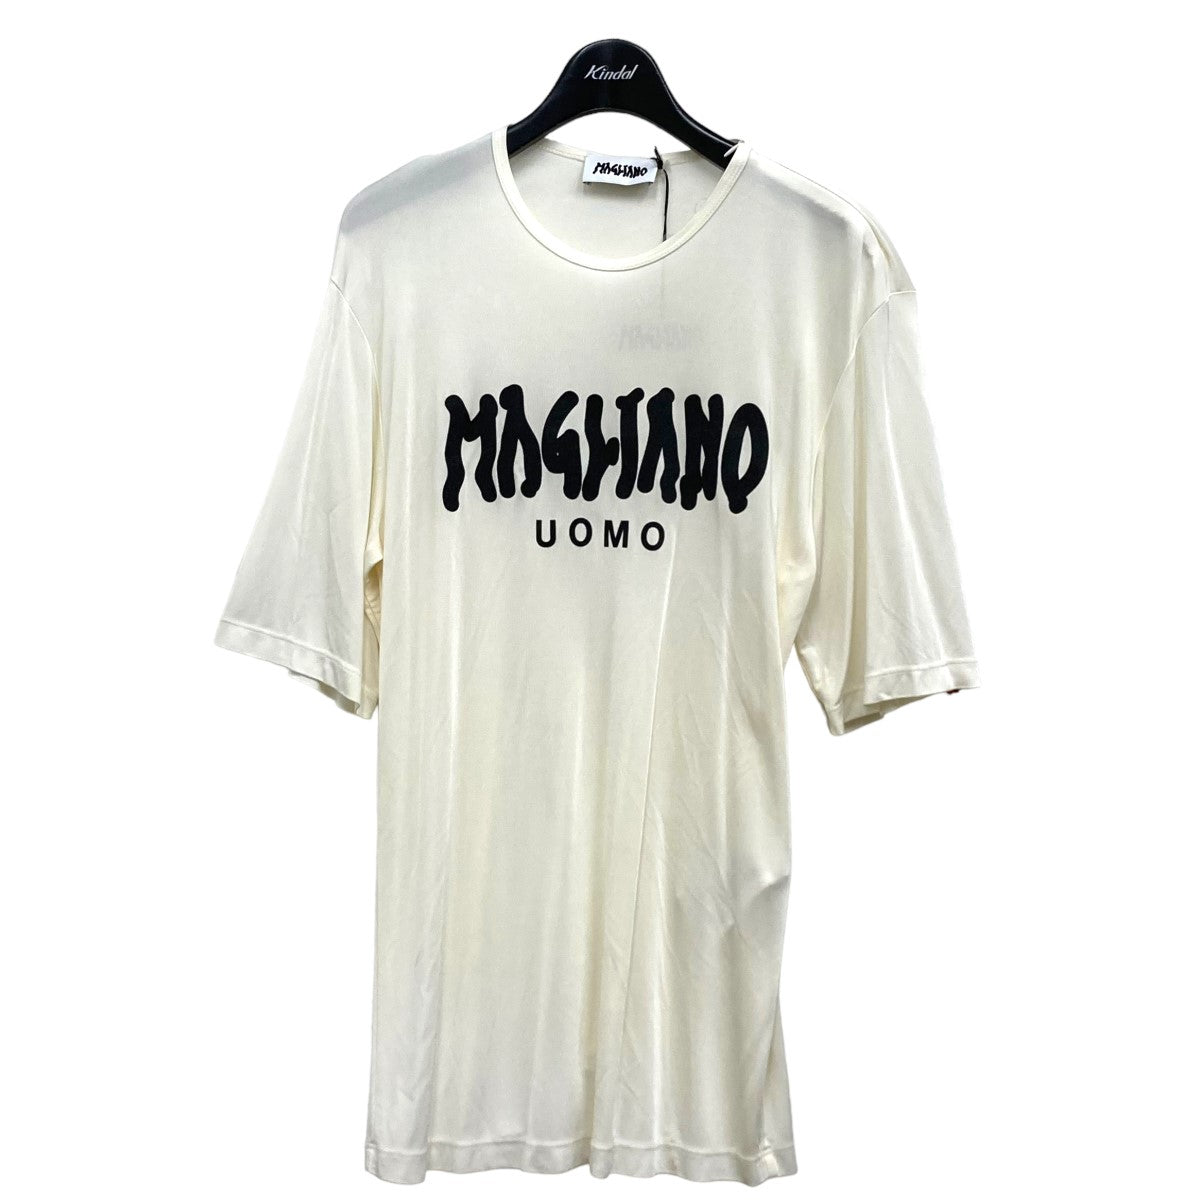 MAGLIANO(マリアーノ) UOMOプリントTシャツ I580049 25 ホワイト 